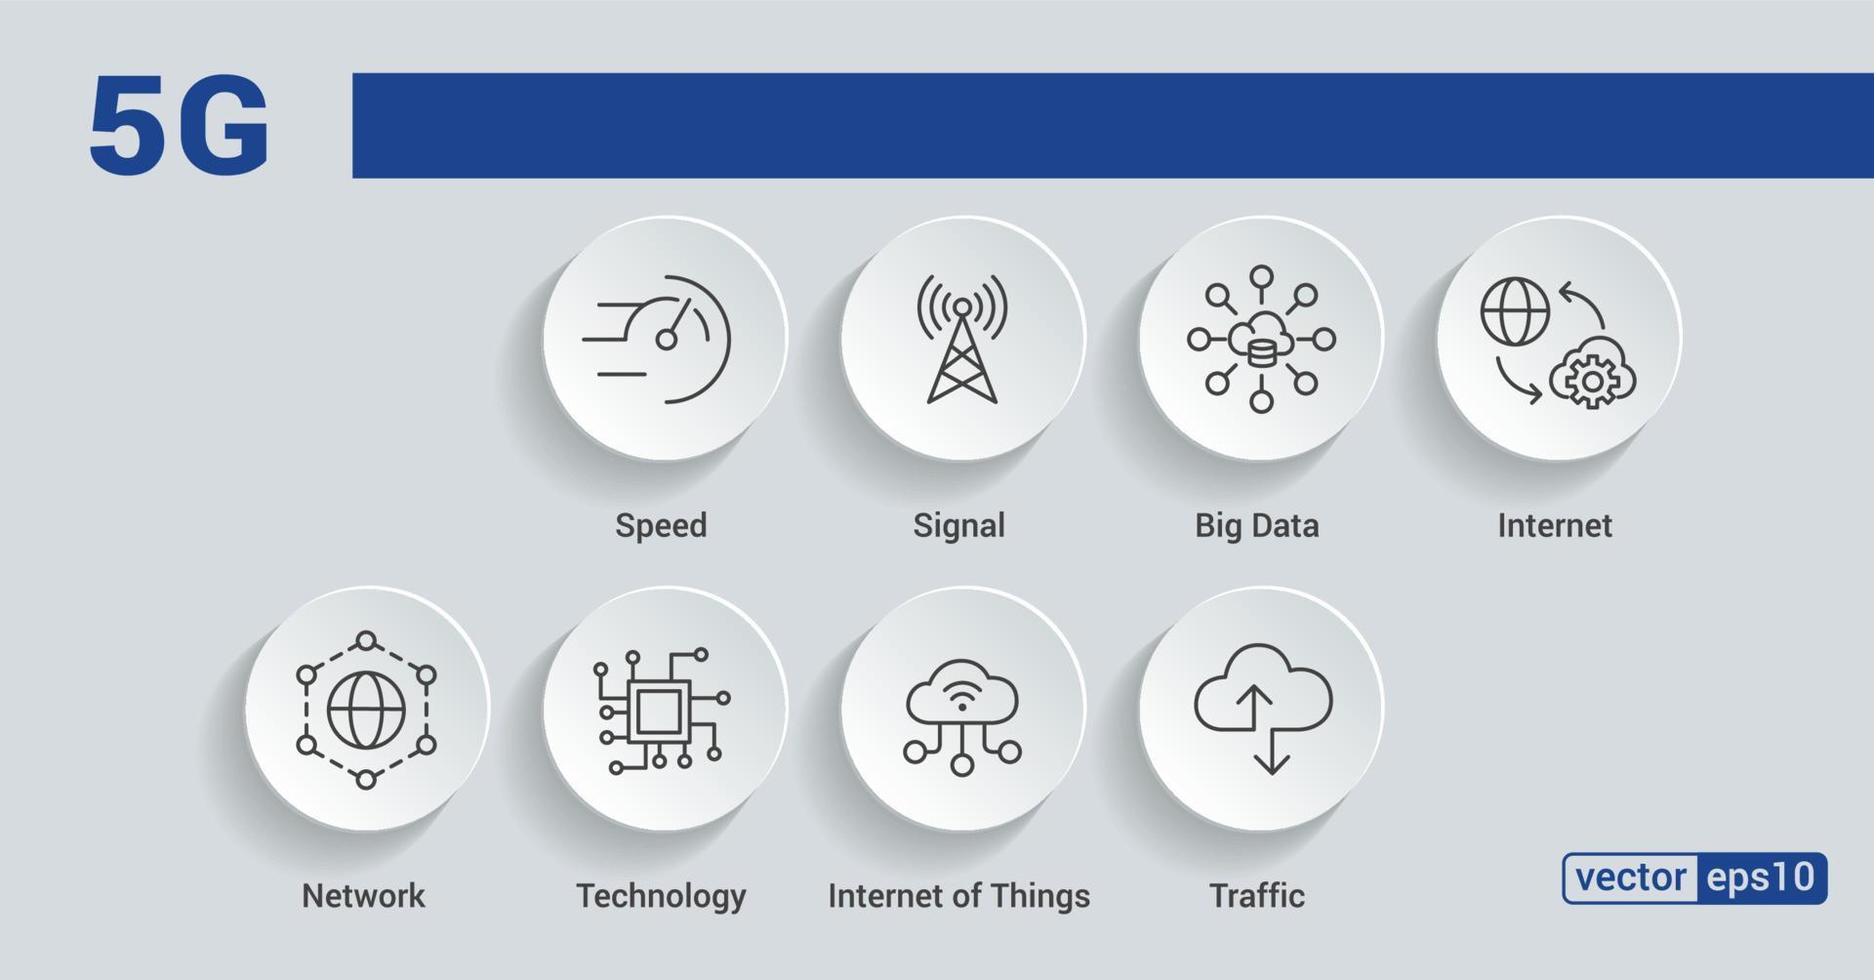 Icône Web de la bannière 5g pour les affaires et la technologie, la vitesse, le signal, le réseau, la technologie, les mégadonnées, l'iot et les icônes de trafic. infographie vectorielle minimale. eps 10 vecteur